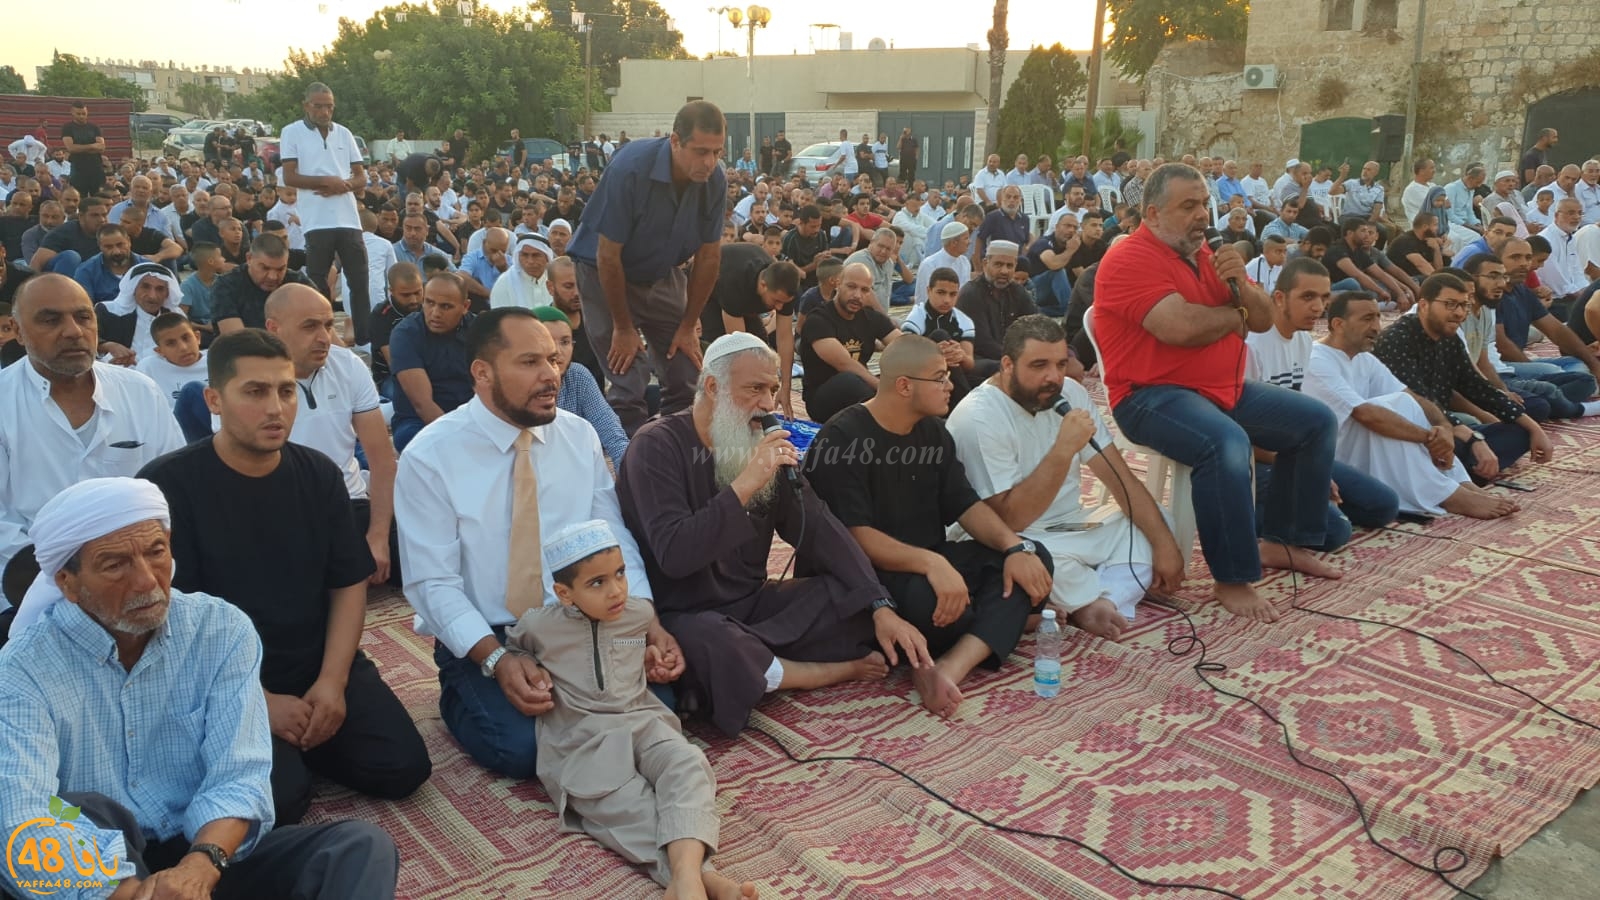  بالفيديو: أهالي مدينة اللد يؤدون صلاة العيد في ساحة المسجد العمري الكبير 